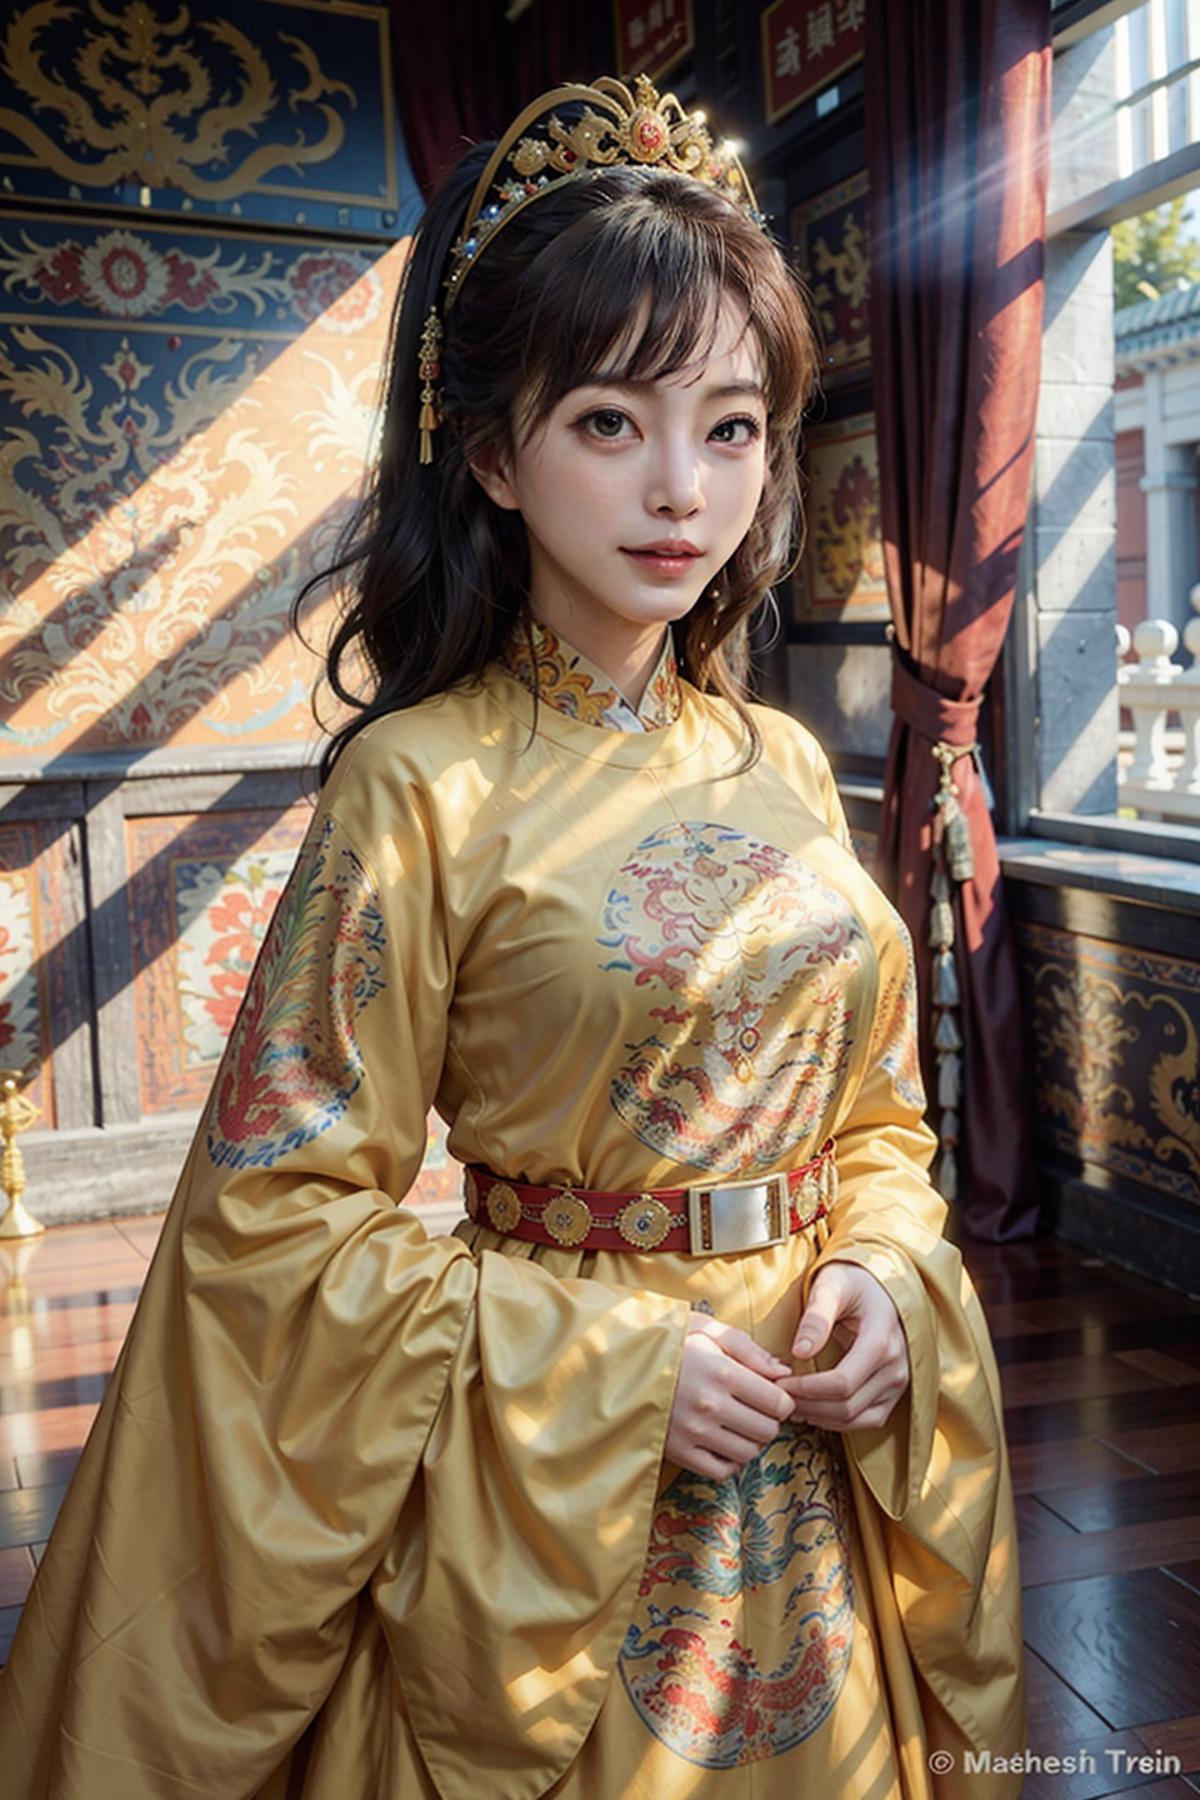 龙袍 | 龍袍 | dragon gown image by Oraculum